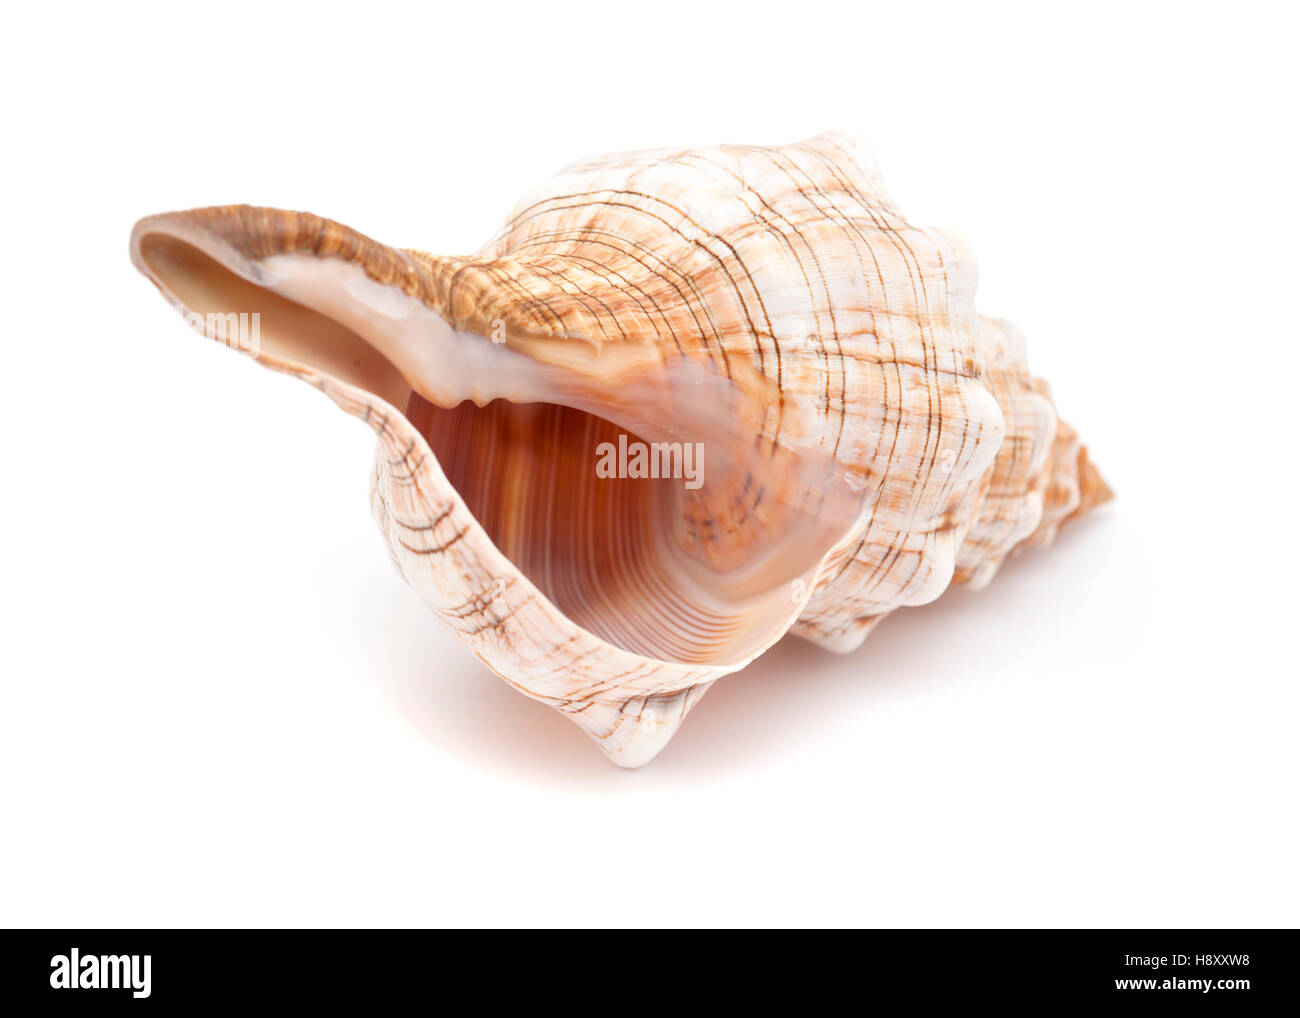 Pleuroploca trapezium, trapezium horse conch shell isolated on white Stock Photo